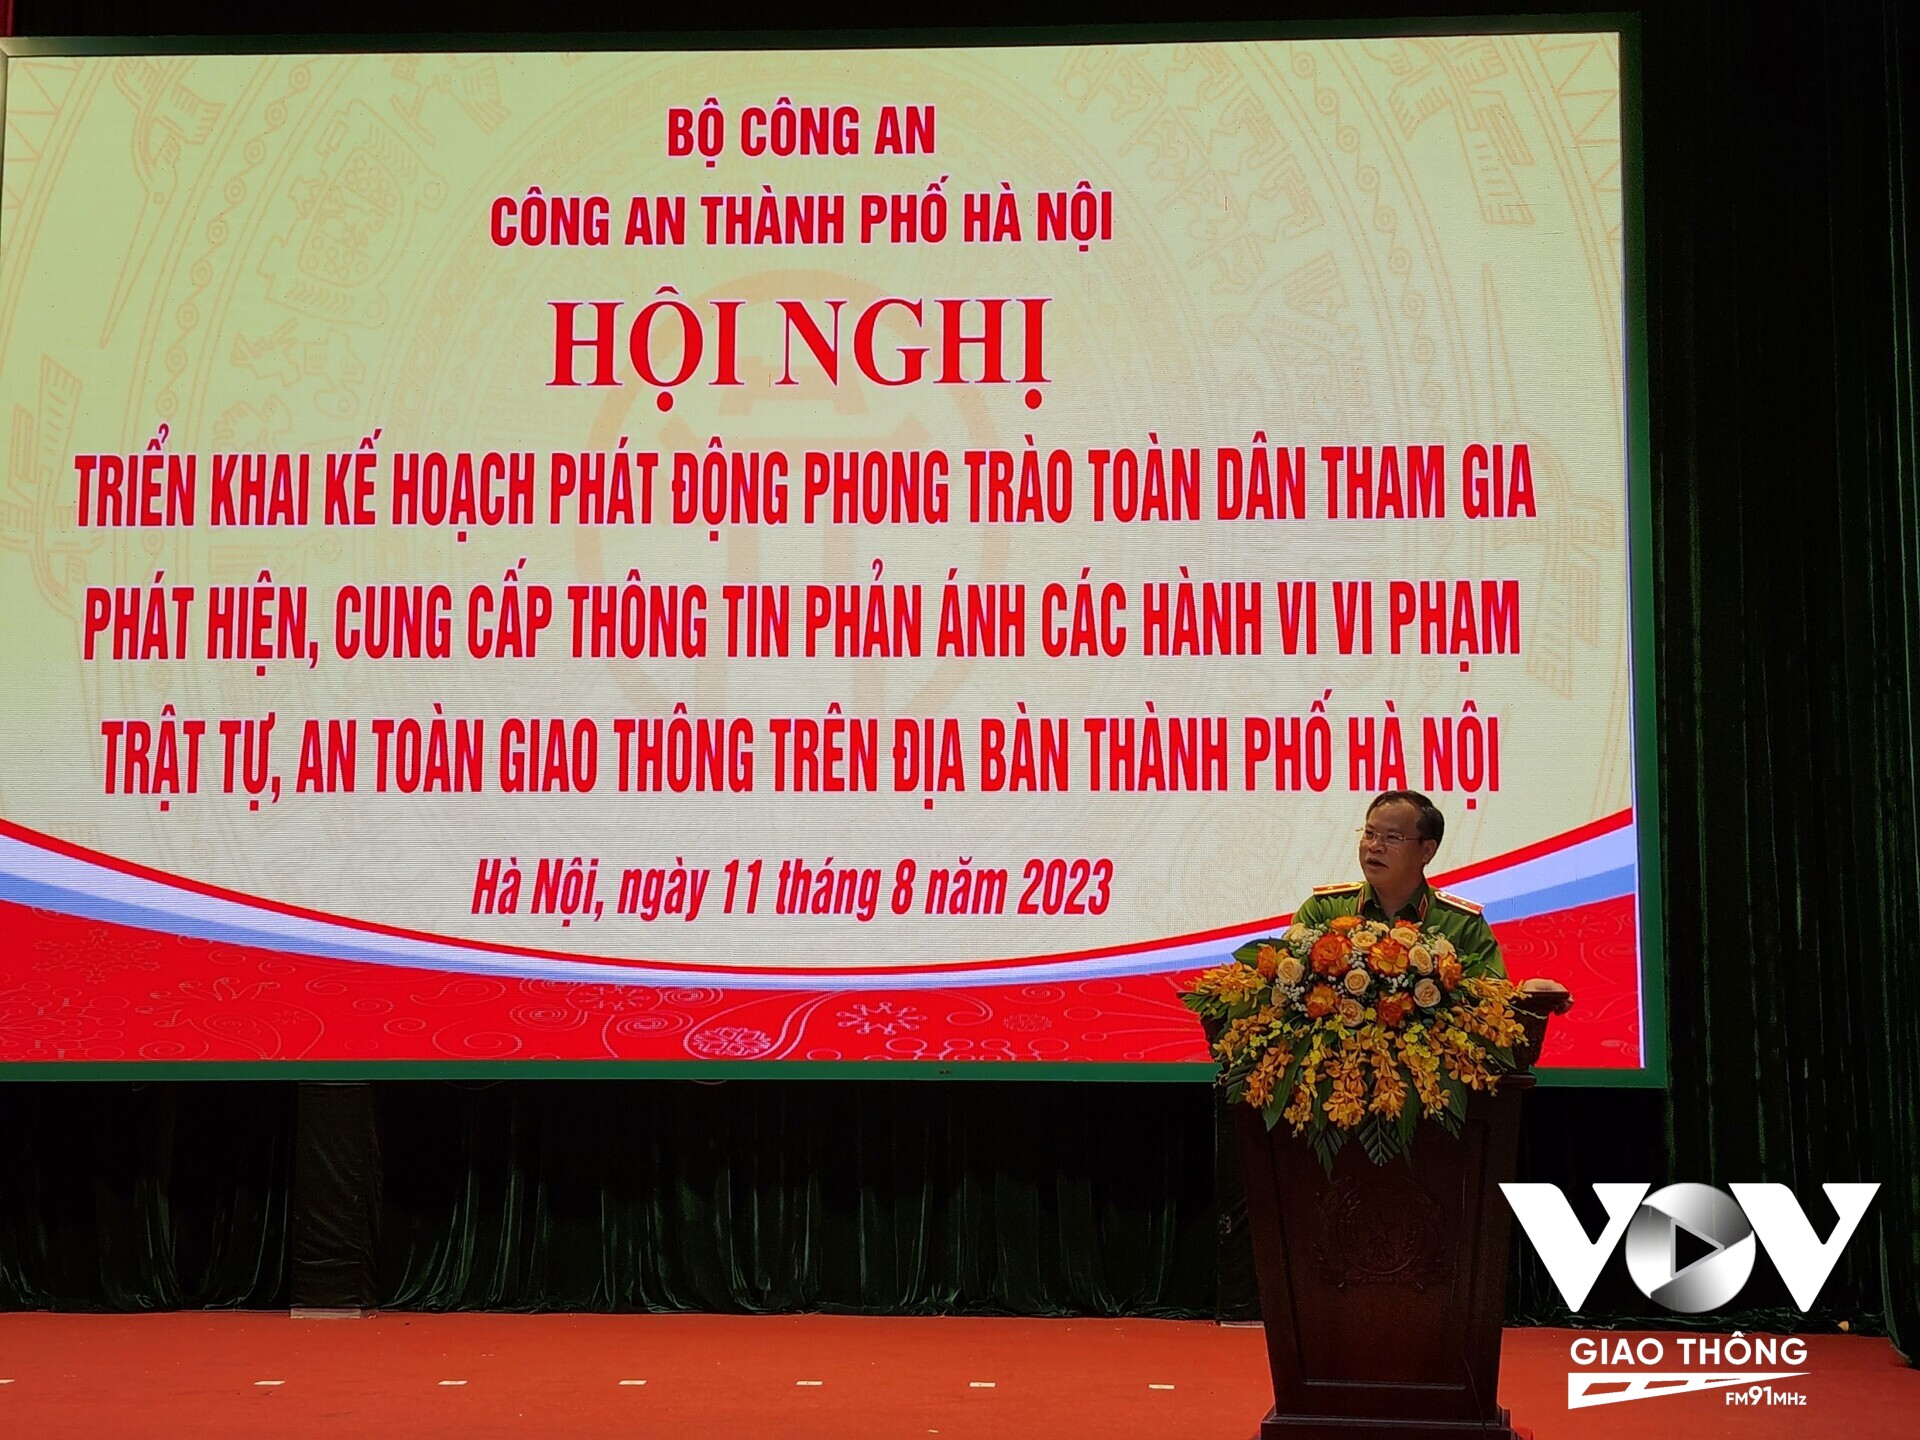 Thiếu tướng Nguyễn Văn Long - Thứ trưởng Bộ Công an, phải đổi mới về tư duy, nhận thức, lấy người dân làm trung tâm, làm chủ thể, làm động lực và là nguồn lực trong công tác bảo đảm TTATGT